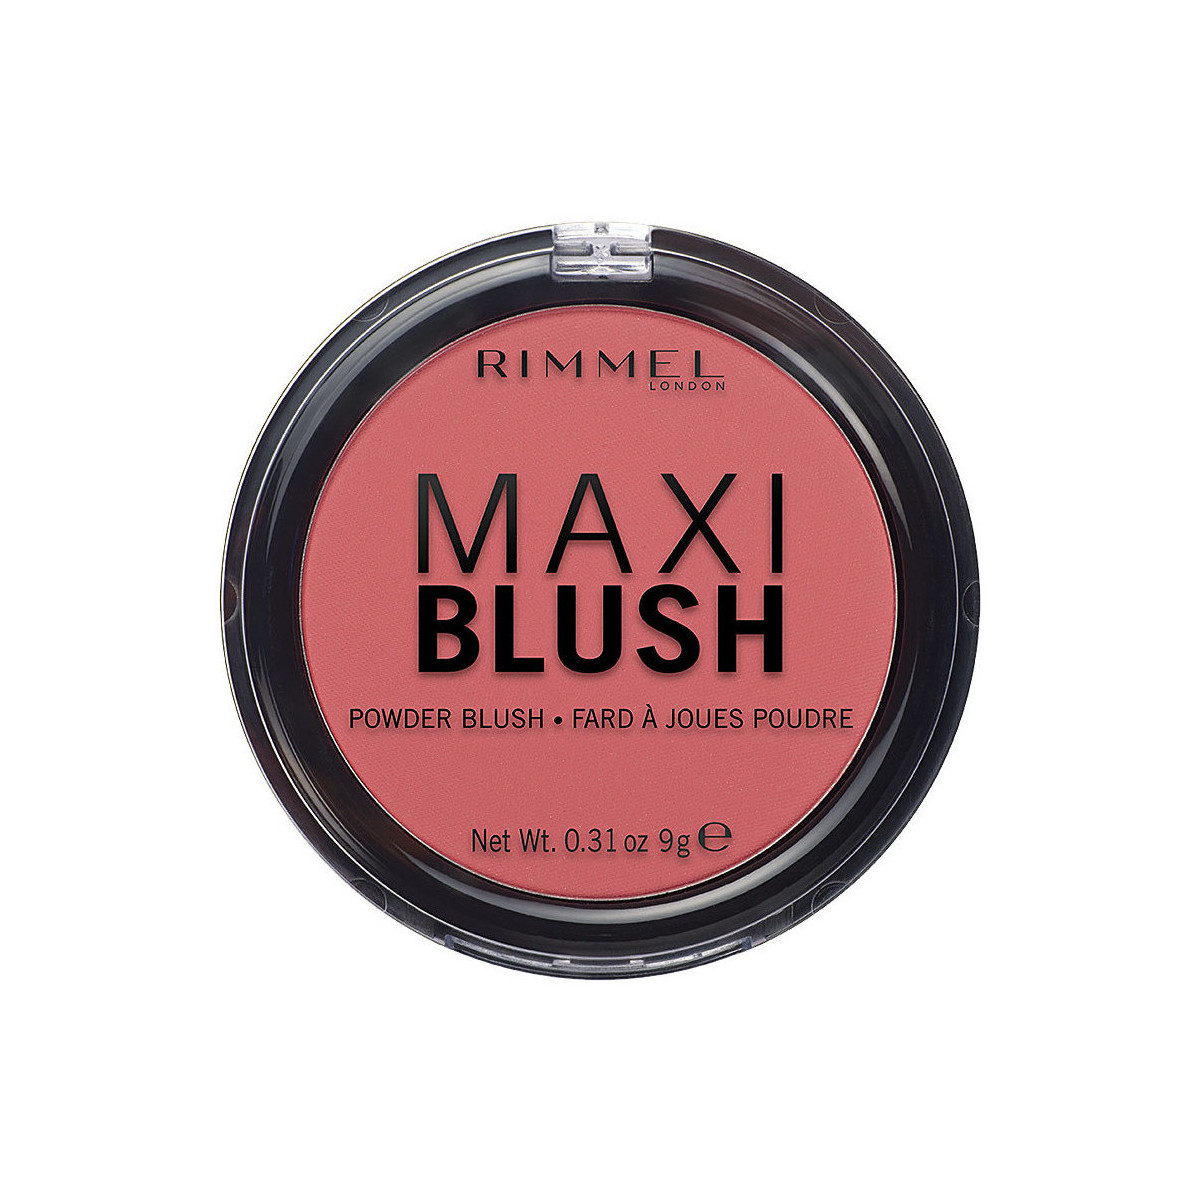 Belleza Colorete & polvos Rimmel London Maxi Blush Powder Blush 003-wild Card 